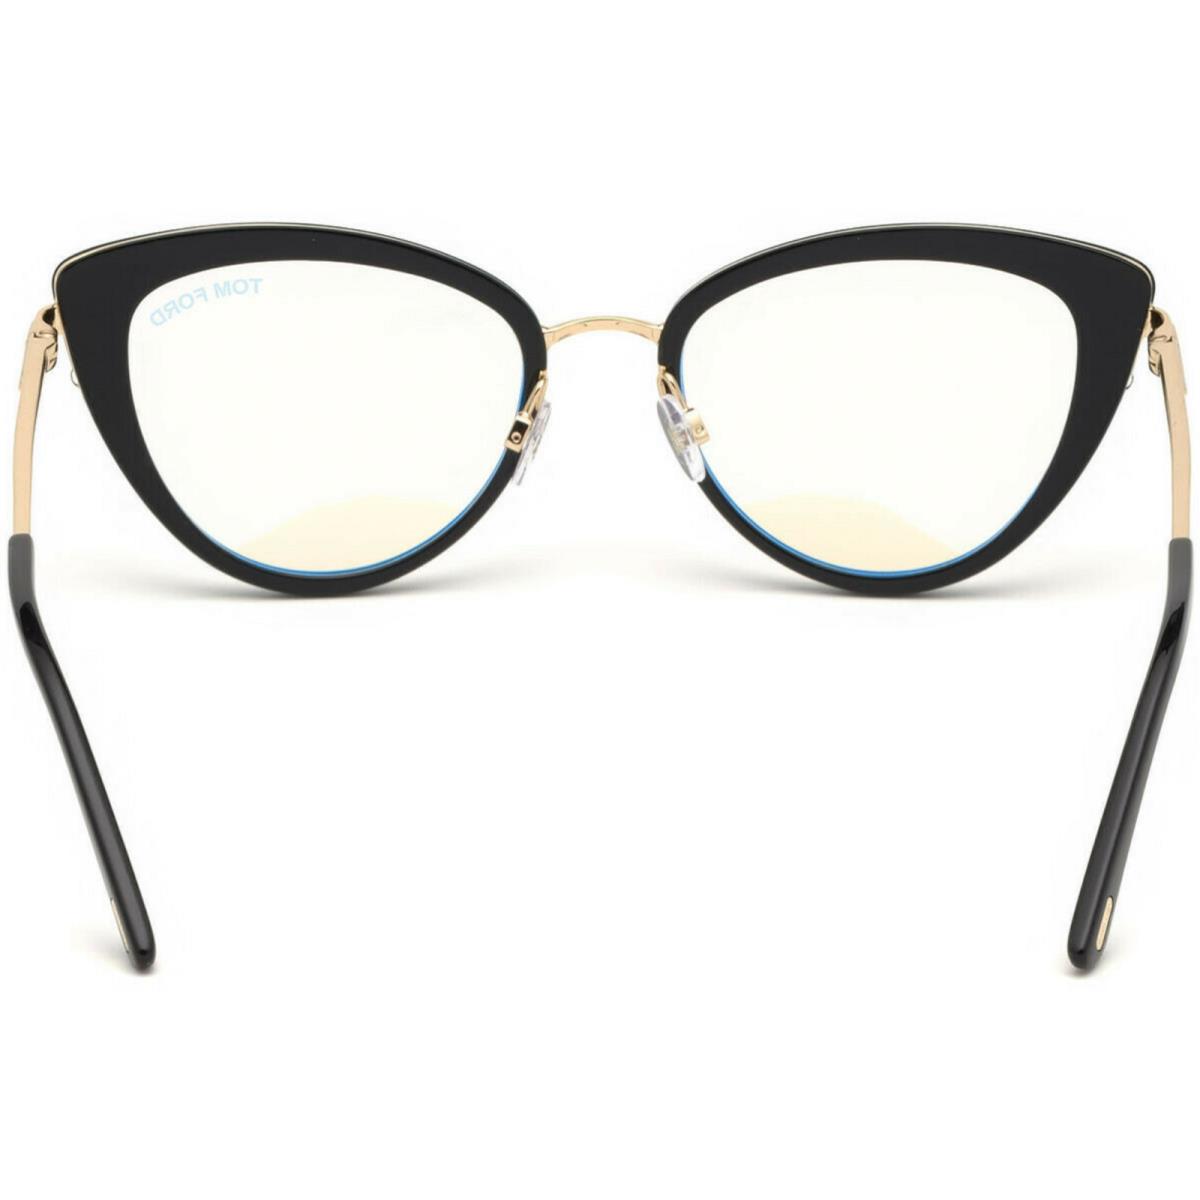 Tom Ford eyeglasses  - Black & Gold , Black / Gold Frame, Clear Demos with Logo Lens